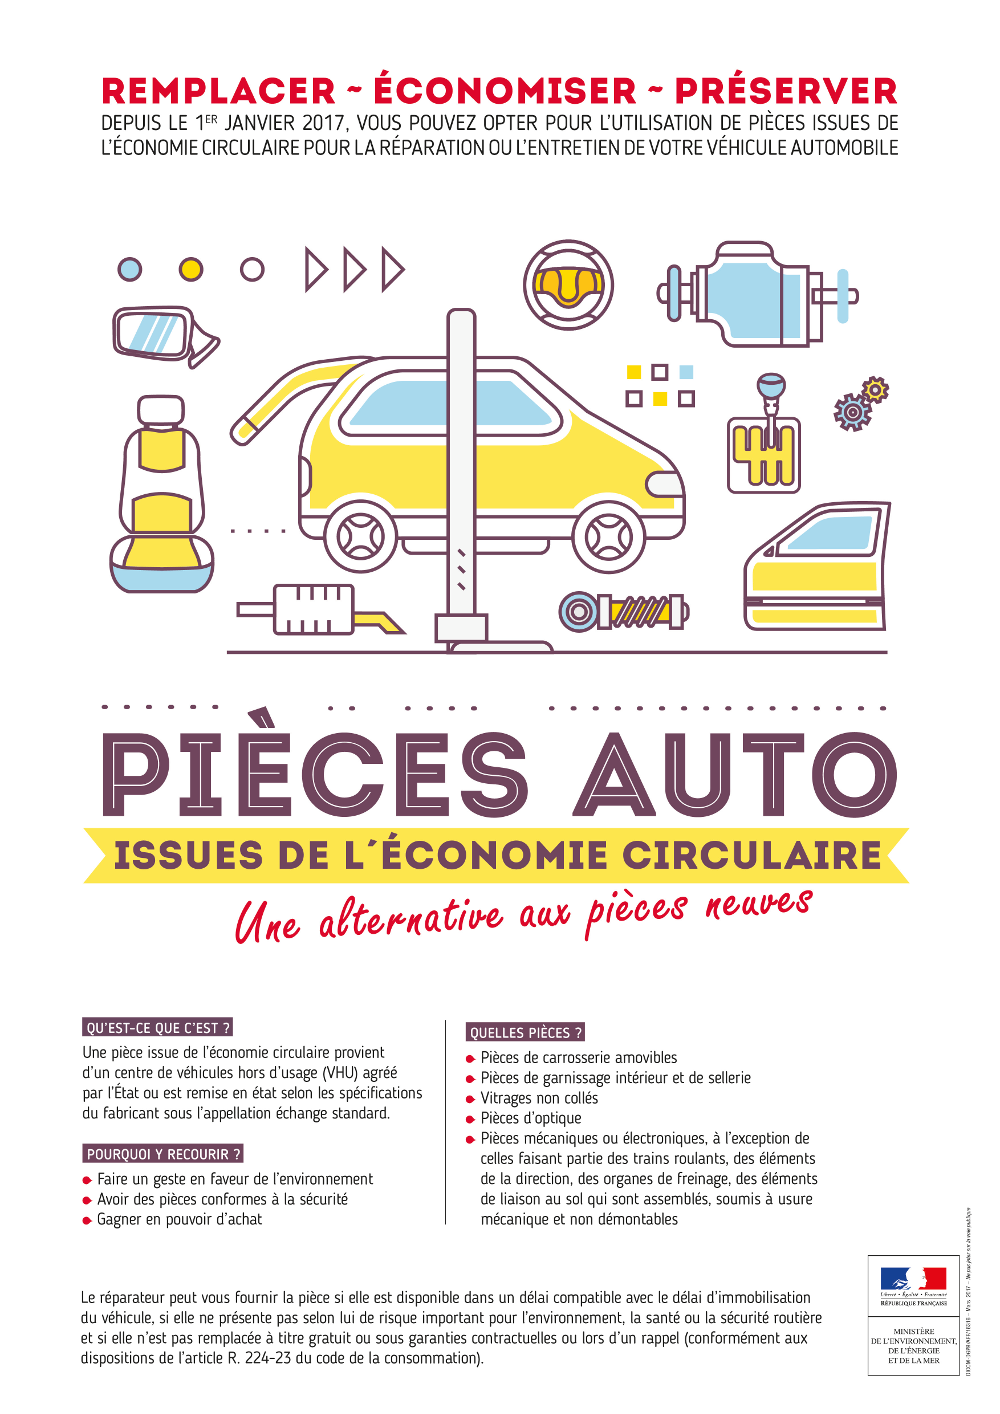 Les pièces automobiles issues de l'économie circulaire PIEC pour